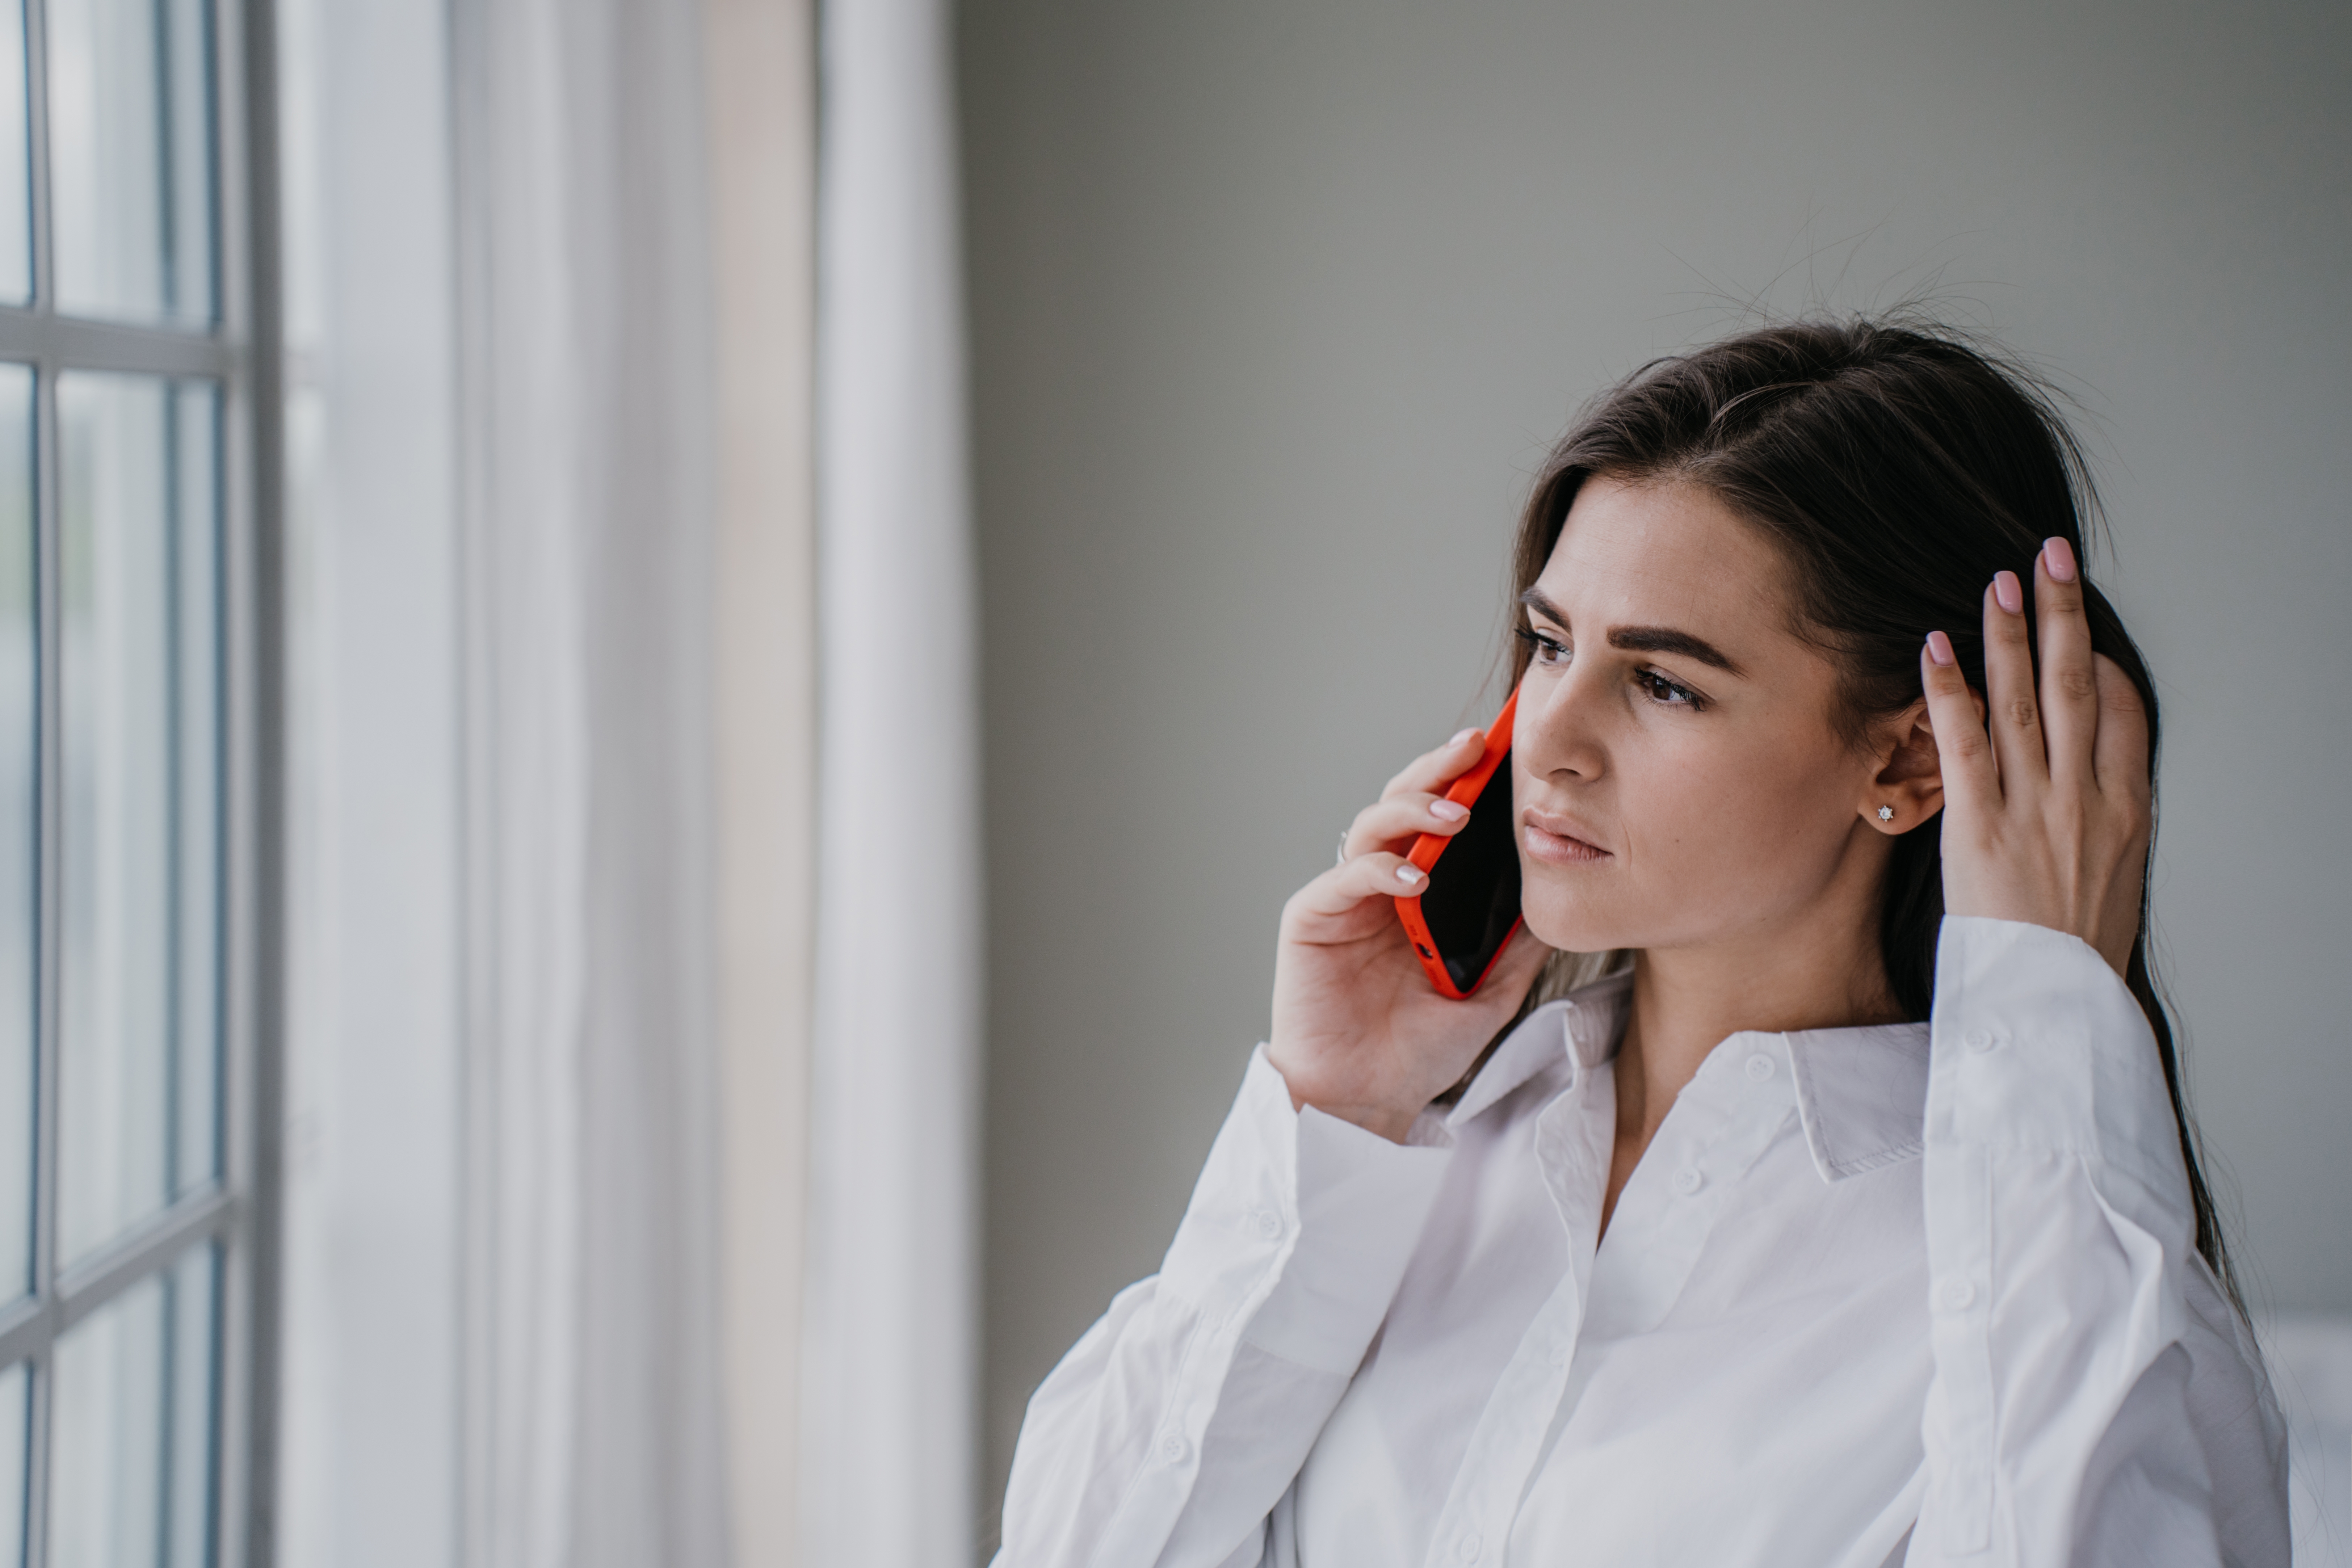 Eine Frau, die telefoniert | Quelle: Shutterstock